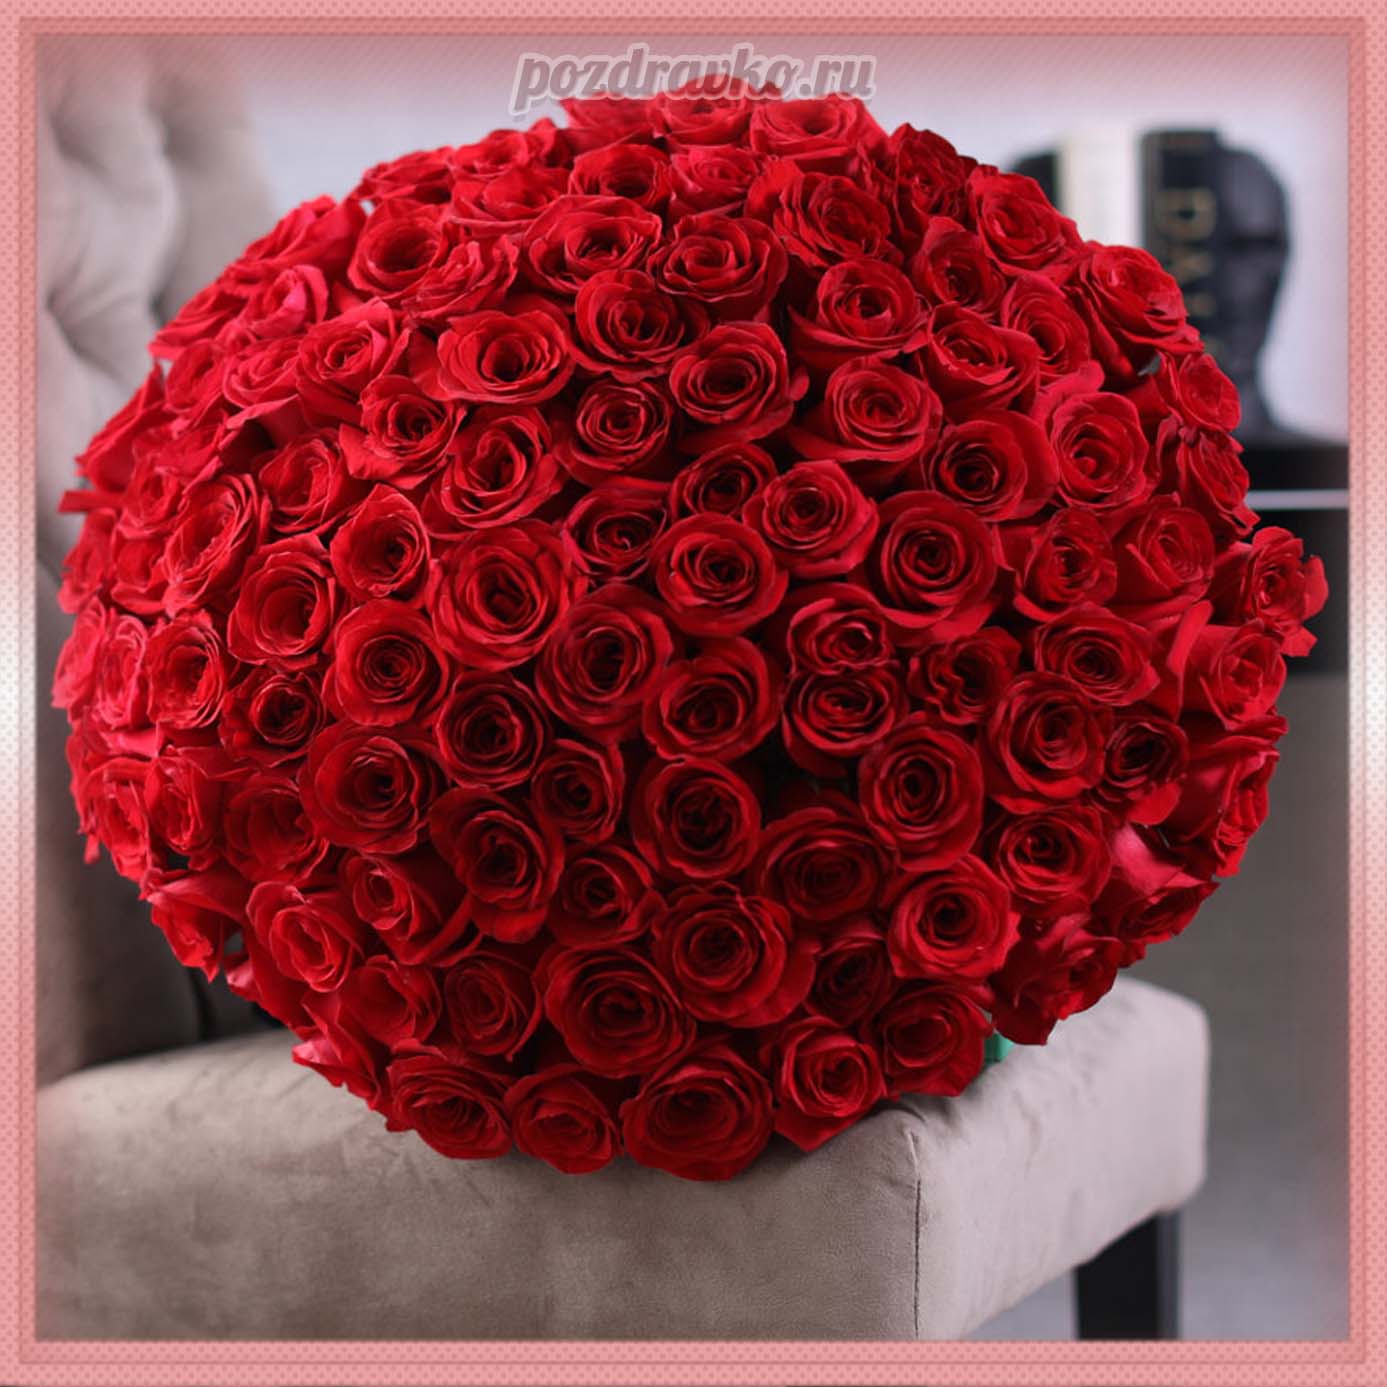 Открытка - большой красивый букет красных роз. Скачать бесплатно или отправить картинку.